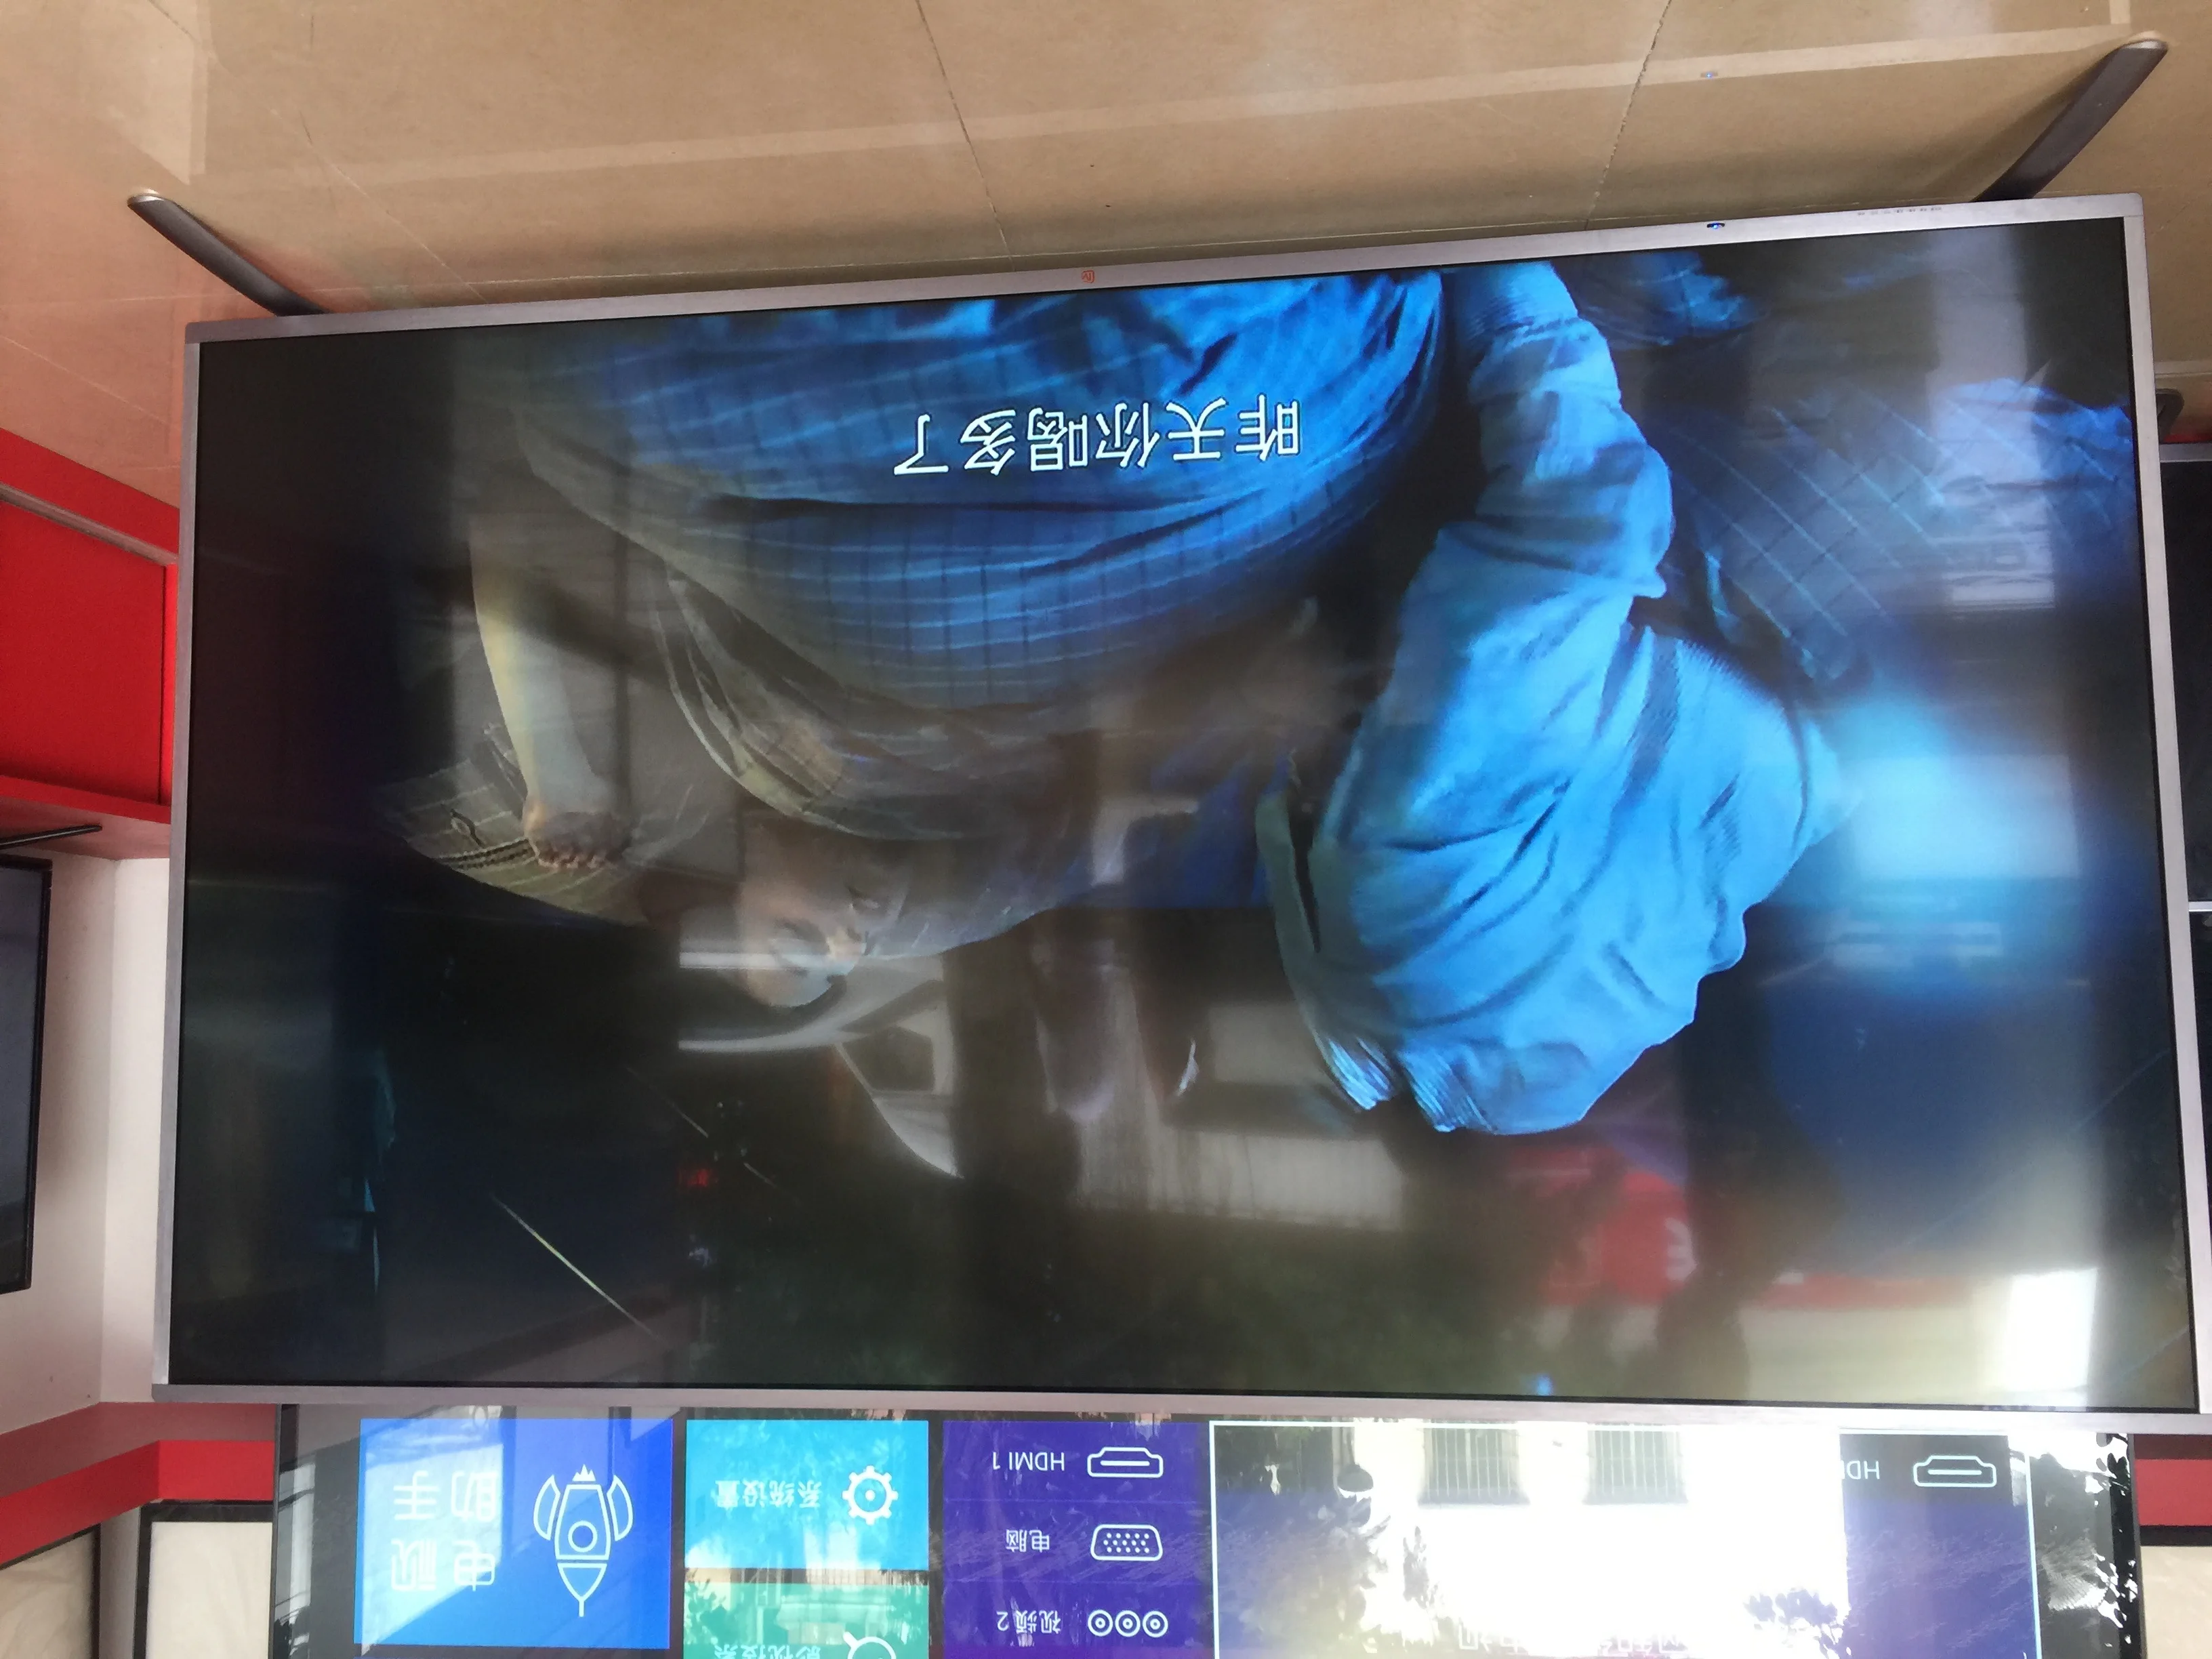 75 дюймов 86 дюймов светодиодный 4K ТВ для приставки android smart светодиодный телевизор ТВ(только грузим к GZ, Китай(материк